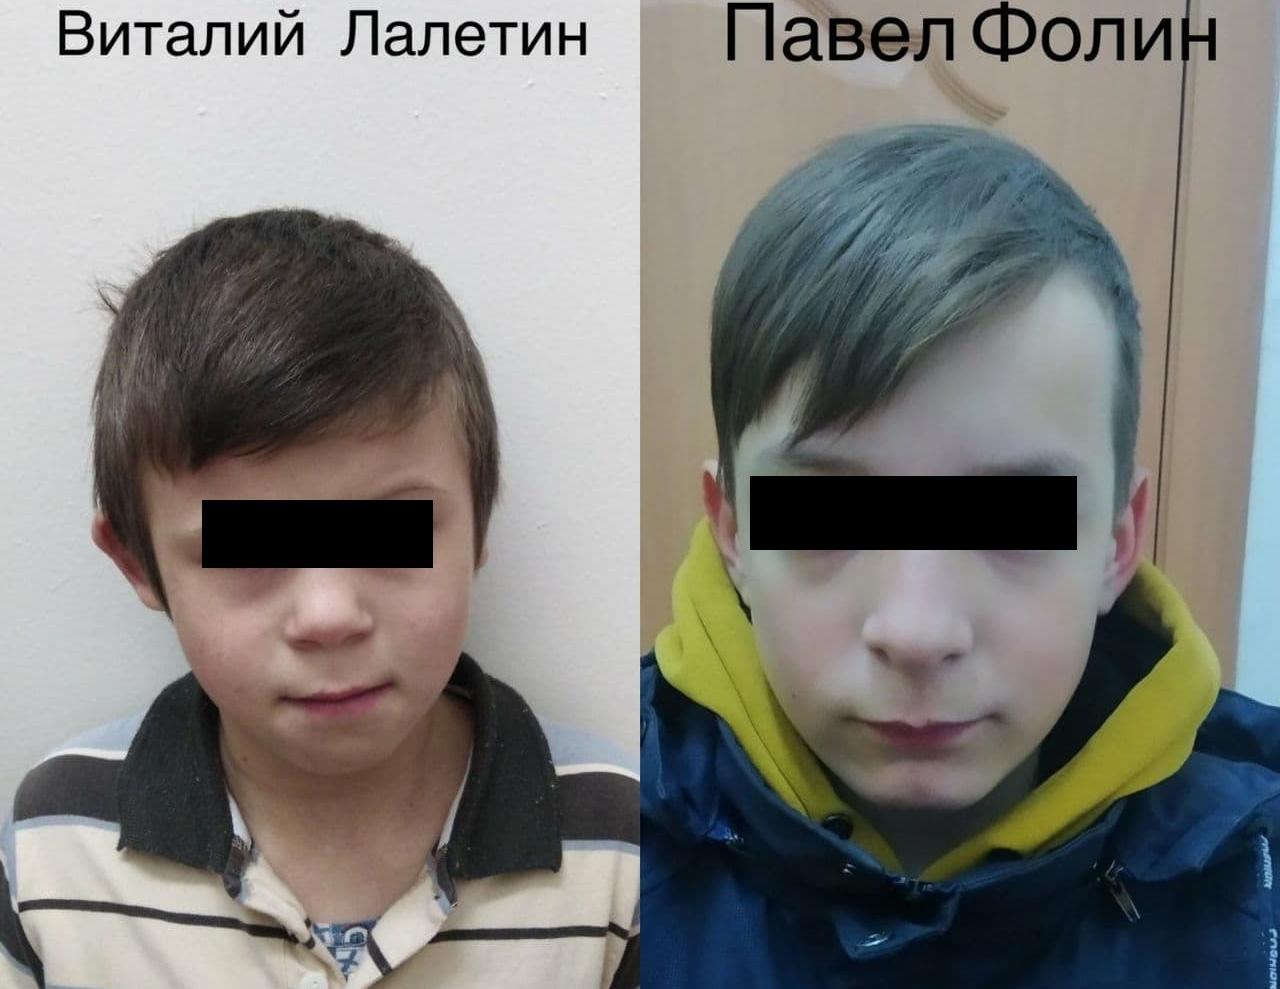 Фото СРОЧНО! В Улан-Удэ из соцучреждения бесследно исчезли два мальчика